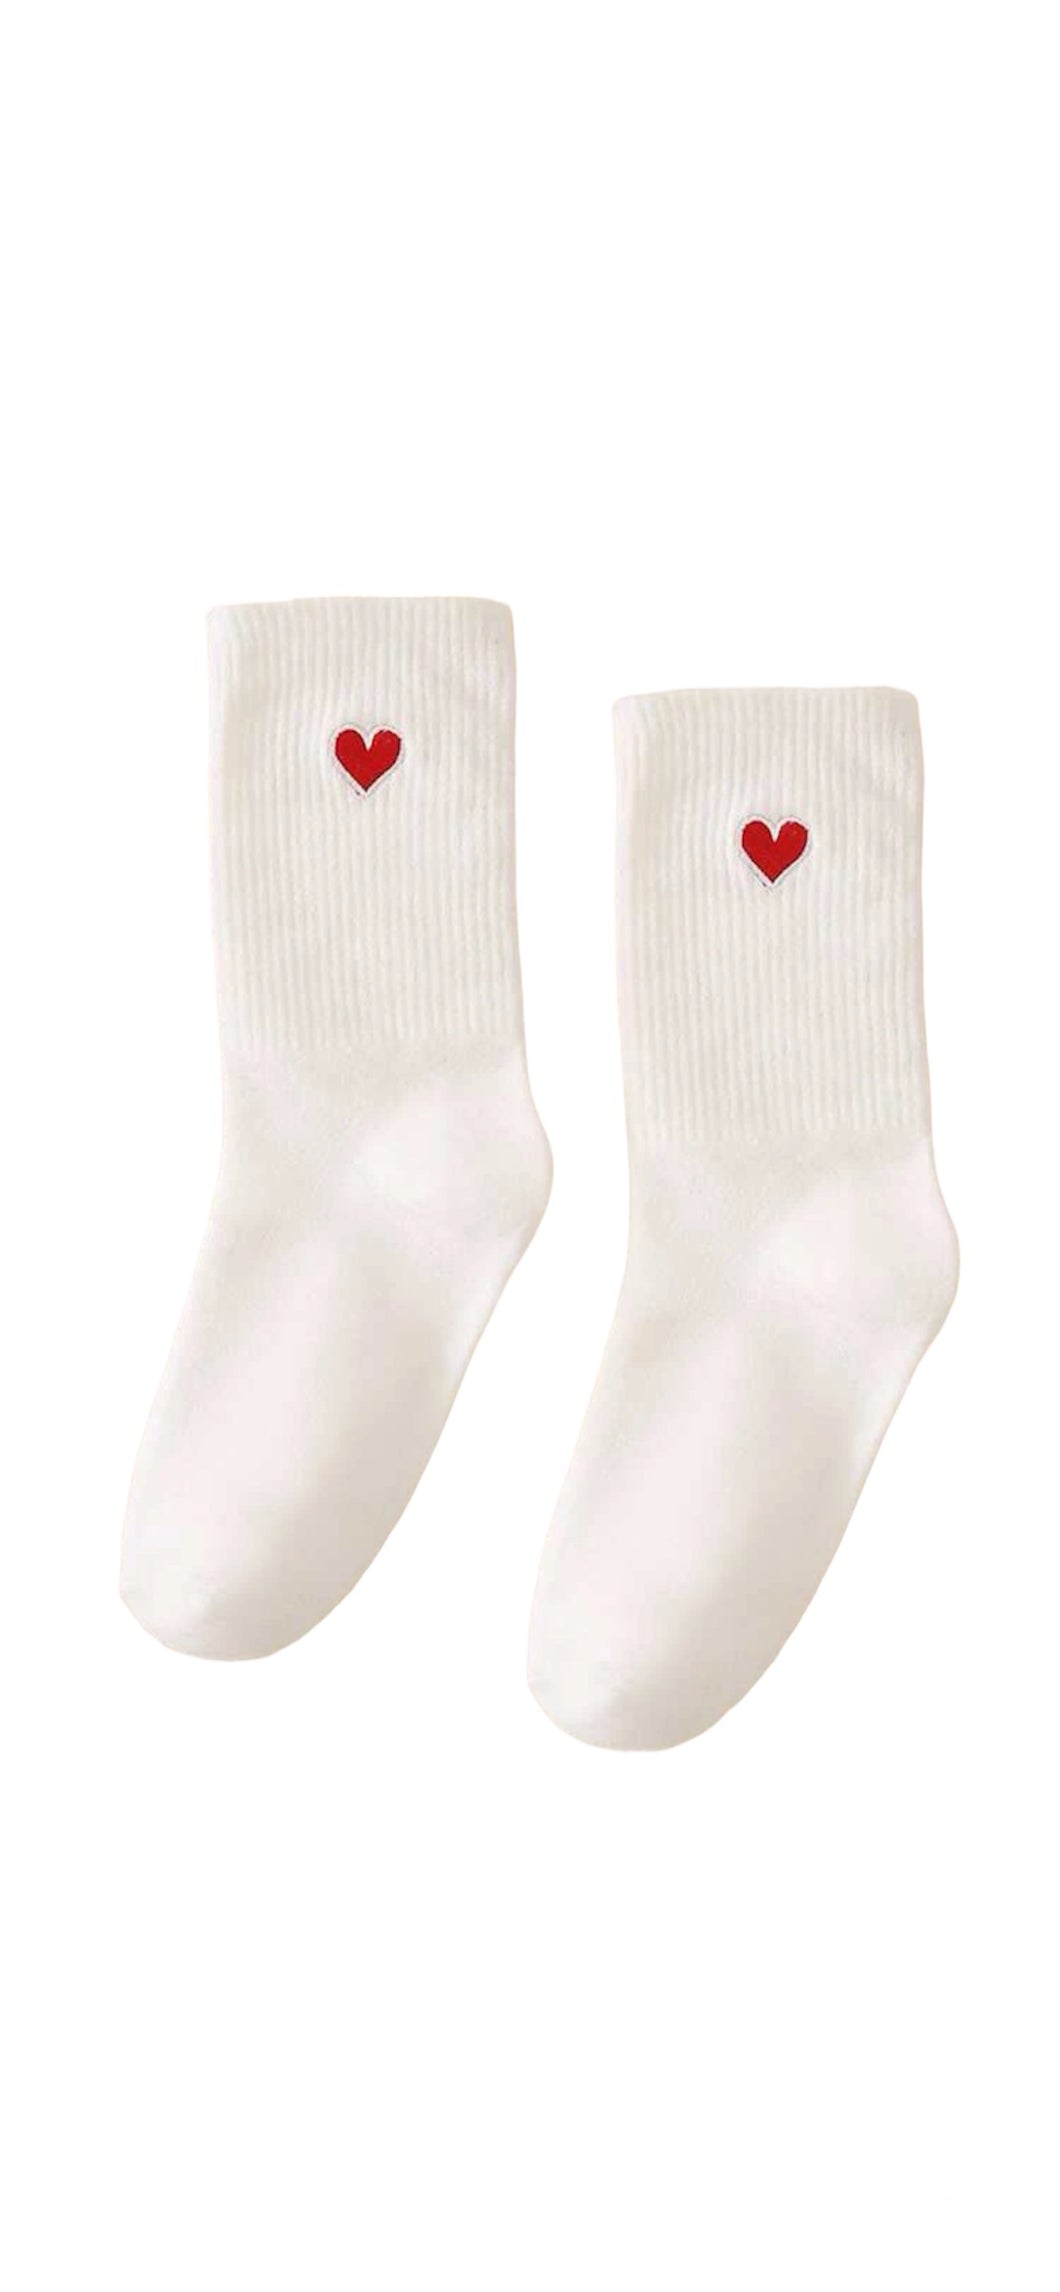 Heart Socks White/Red